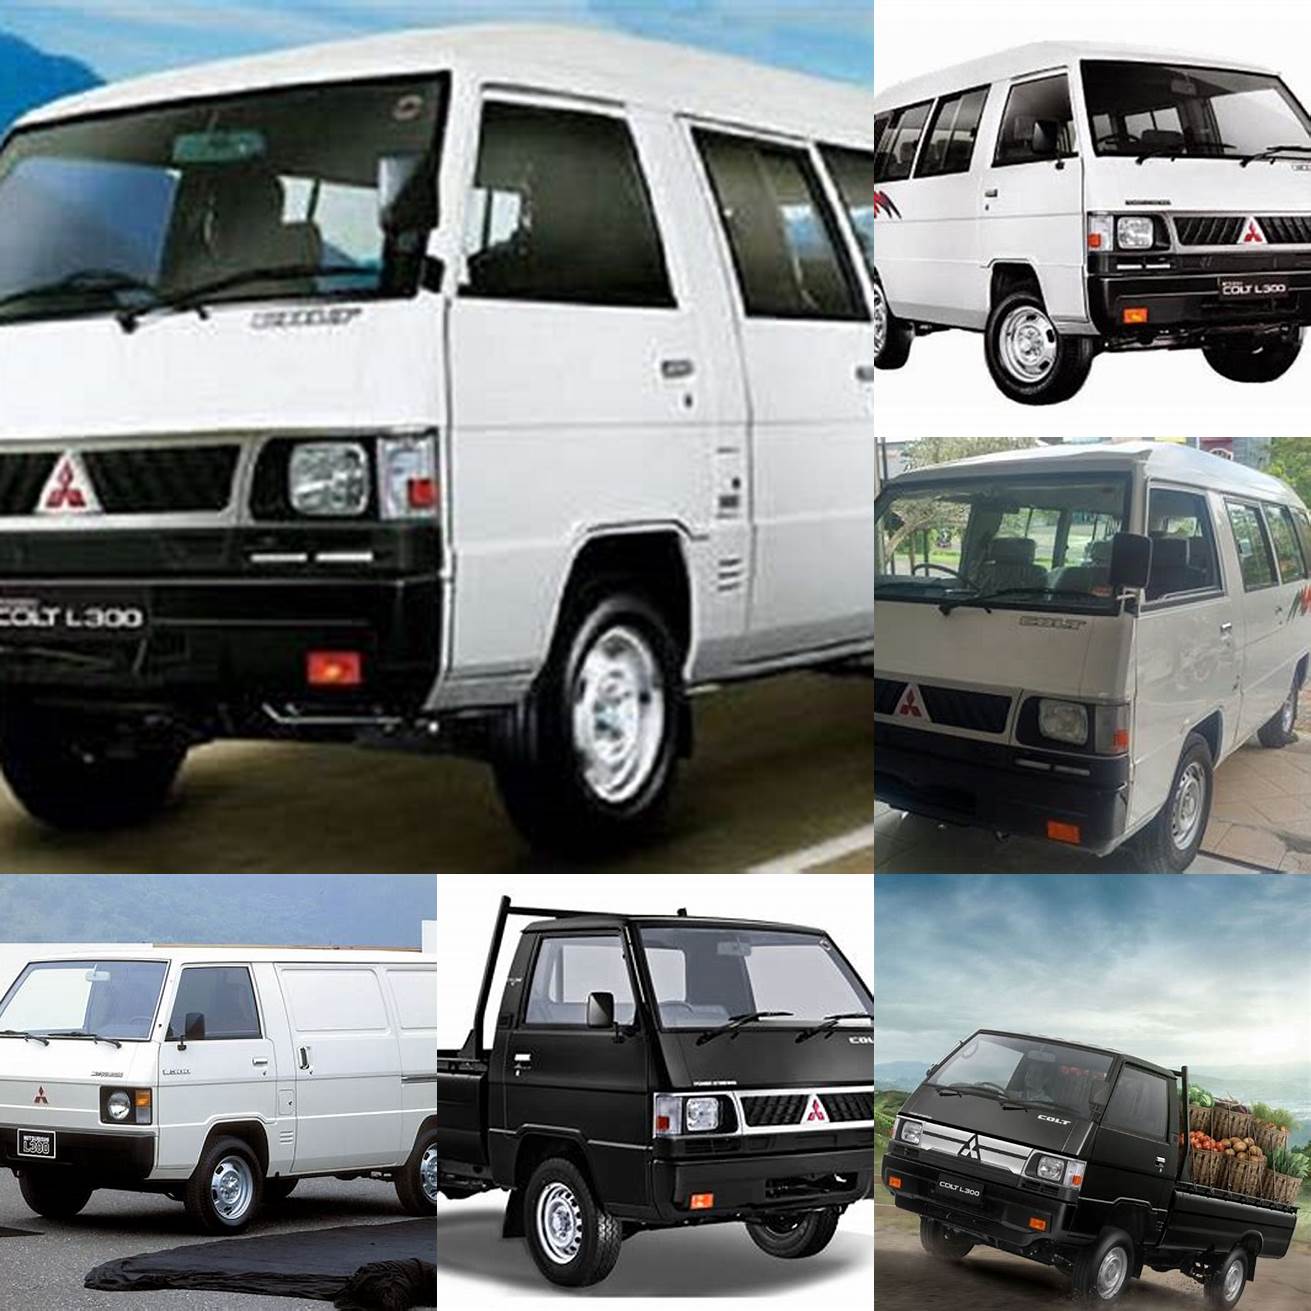 Mobil travel jenis Mitsubishi L300 dengan kapasitas 10 penumpang